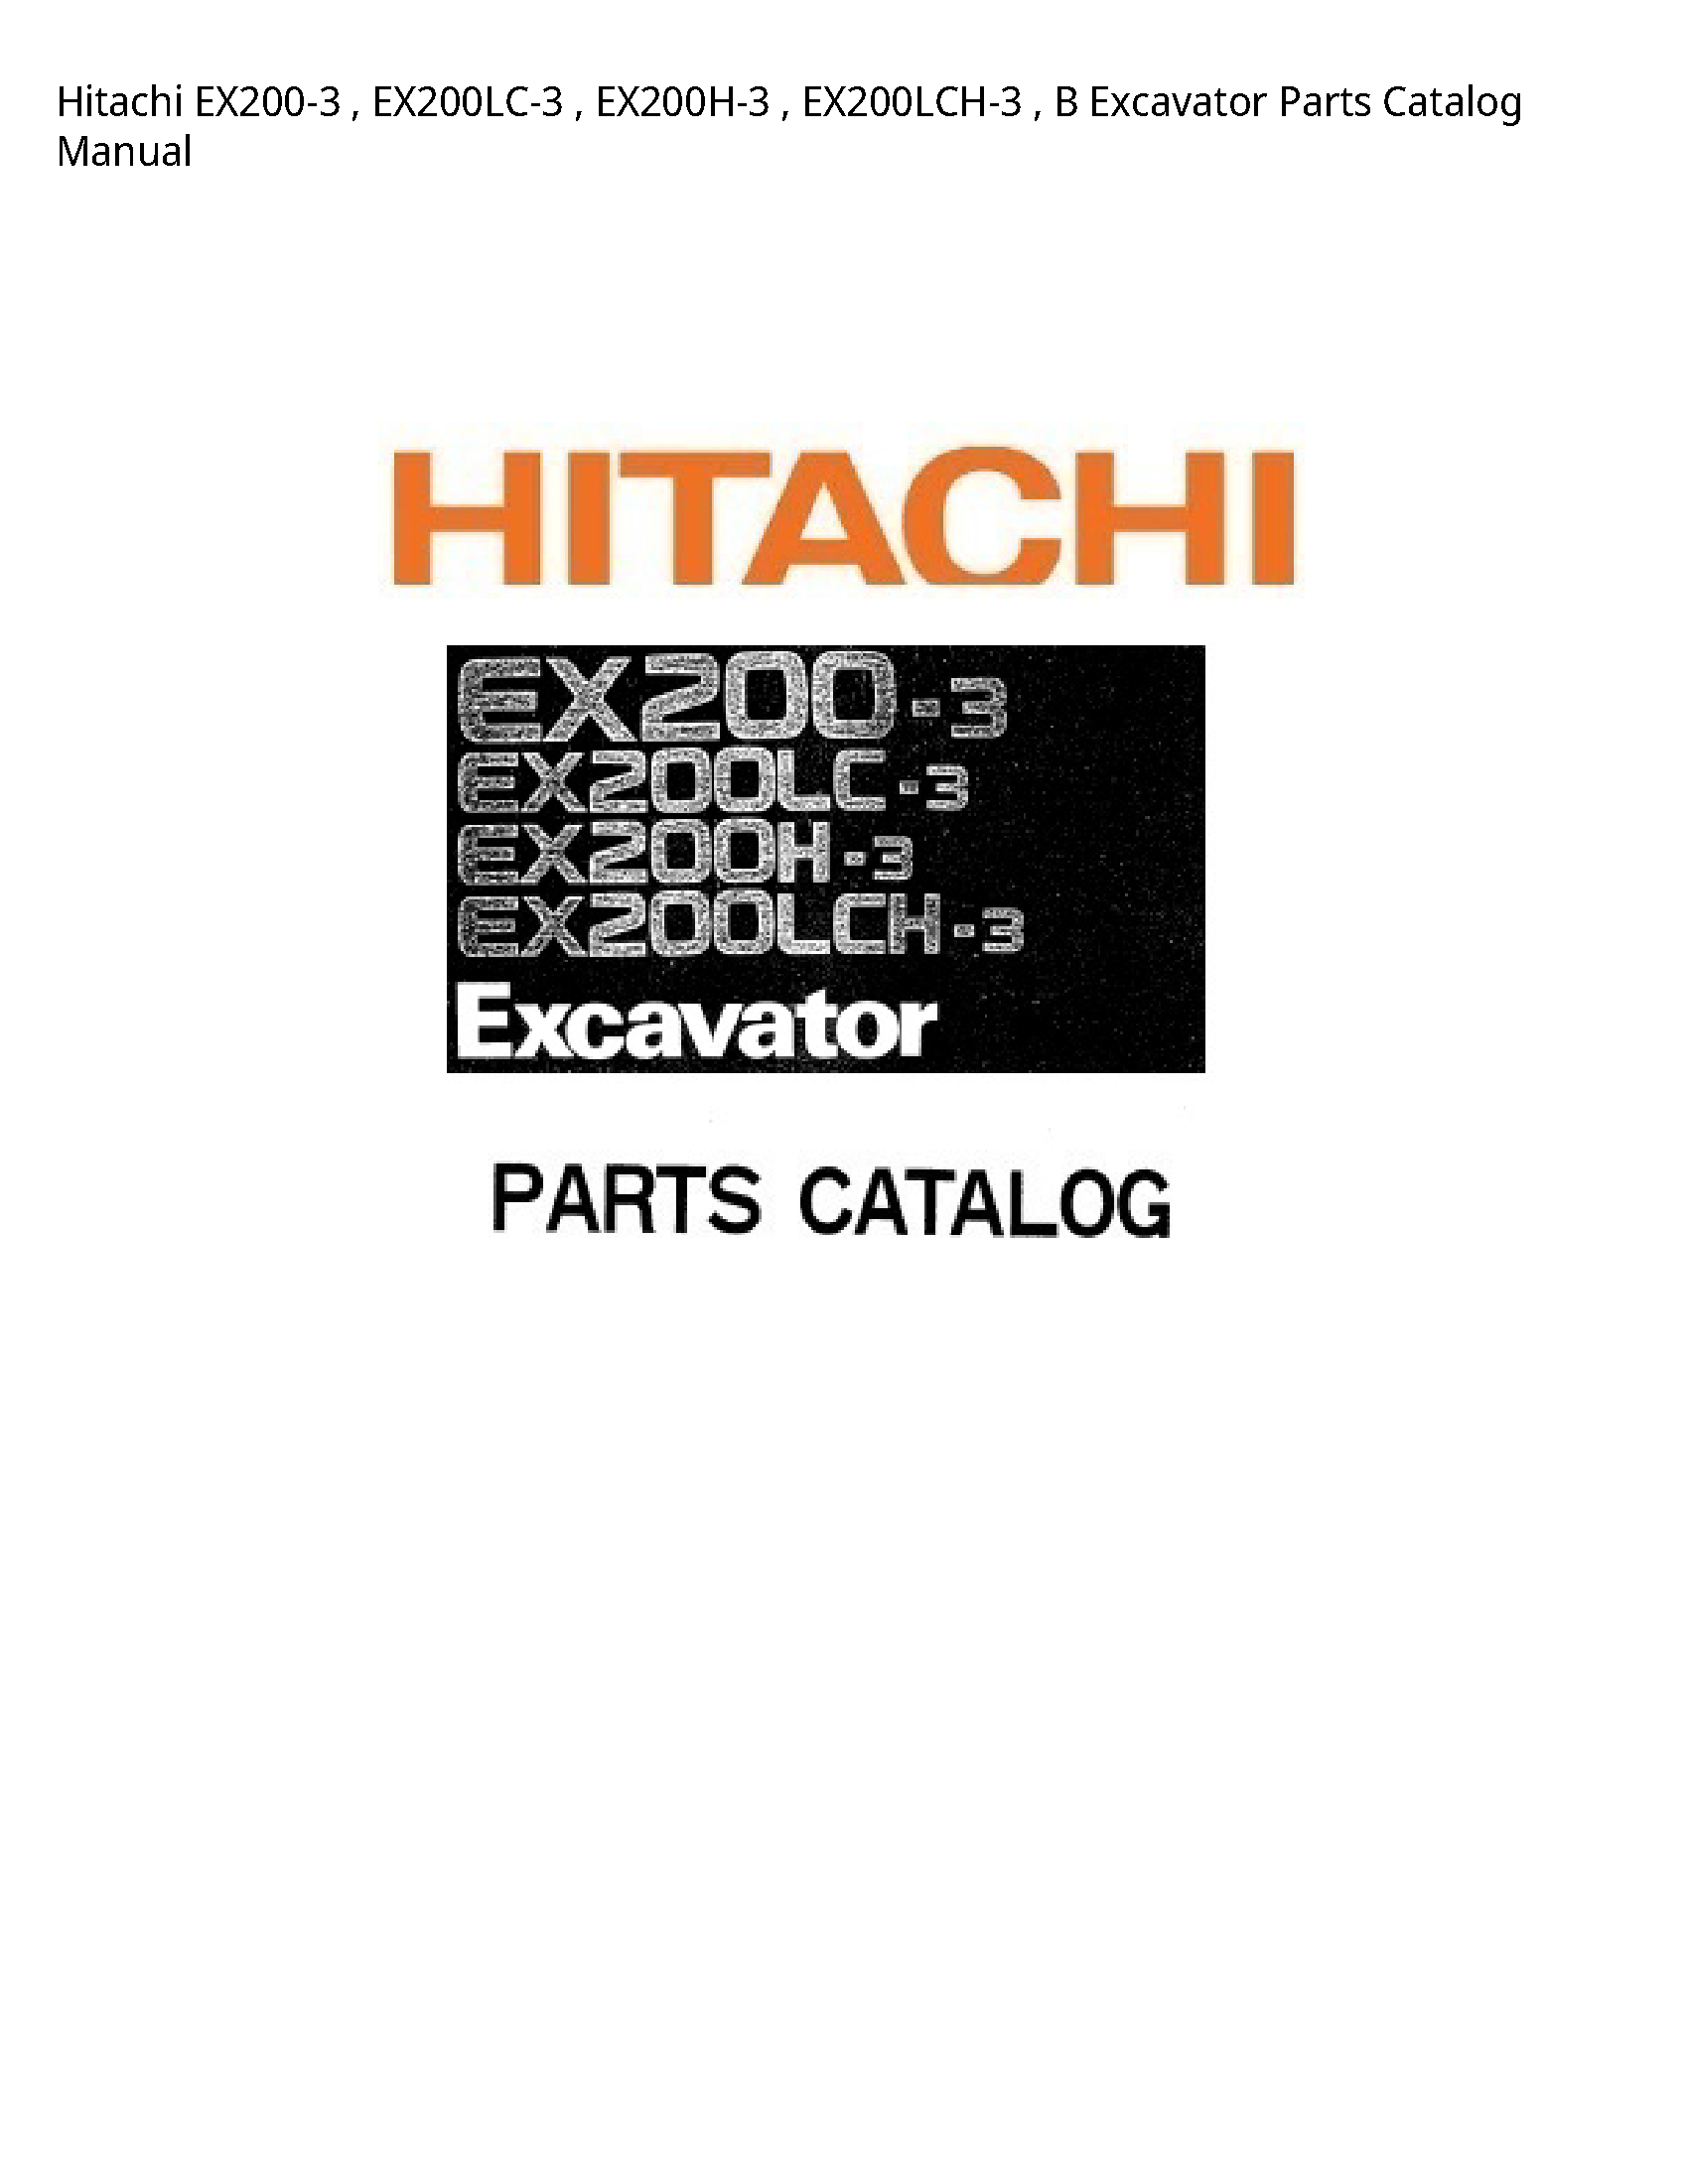 Hitachi EX200-3 Excavator Parts Catalog manual